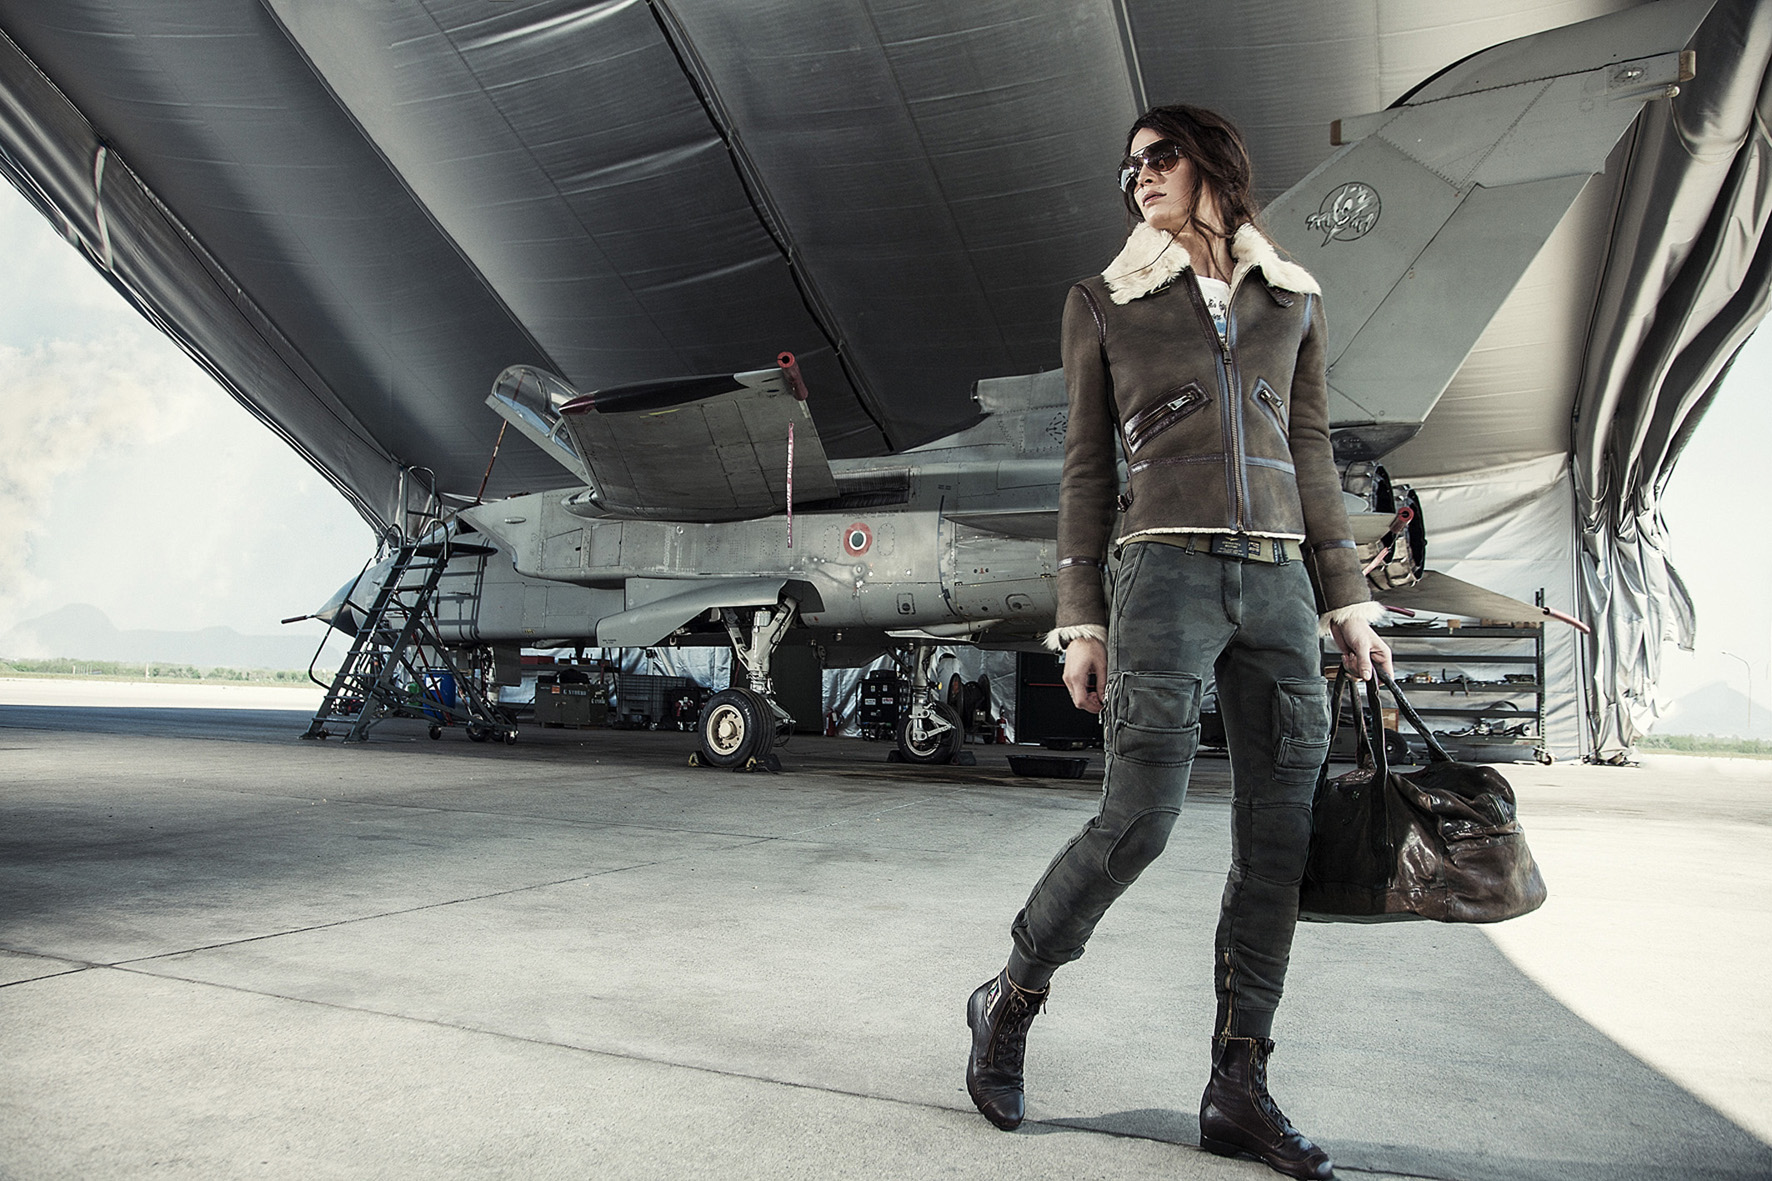 Aeronautica Militare collezione donna autunno inverno 2015 2016: il fascino dell’uniforme, le foto